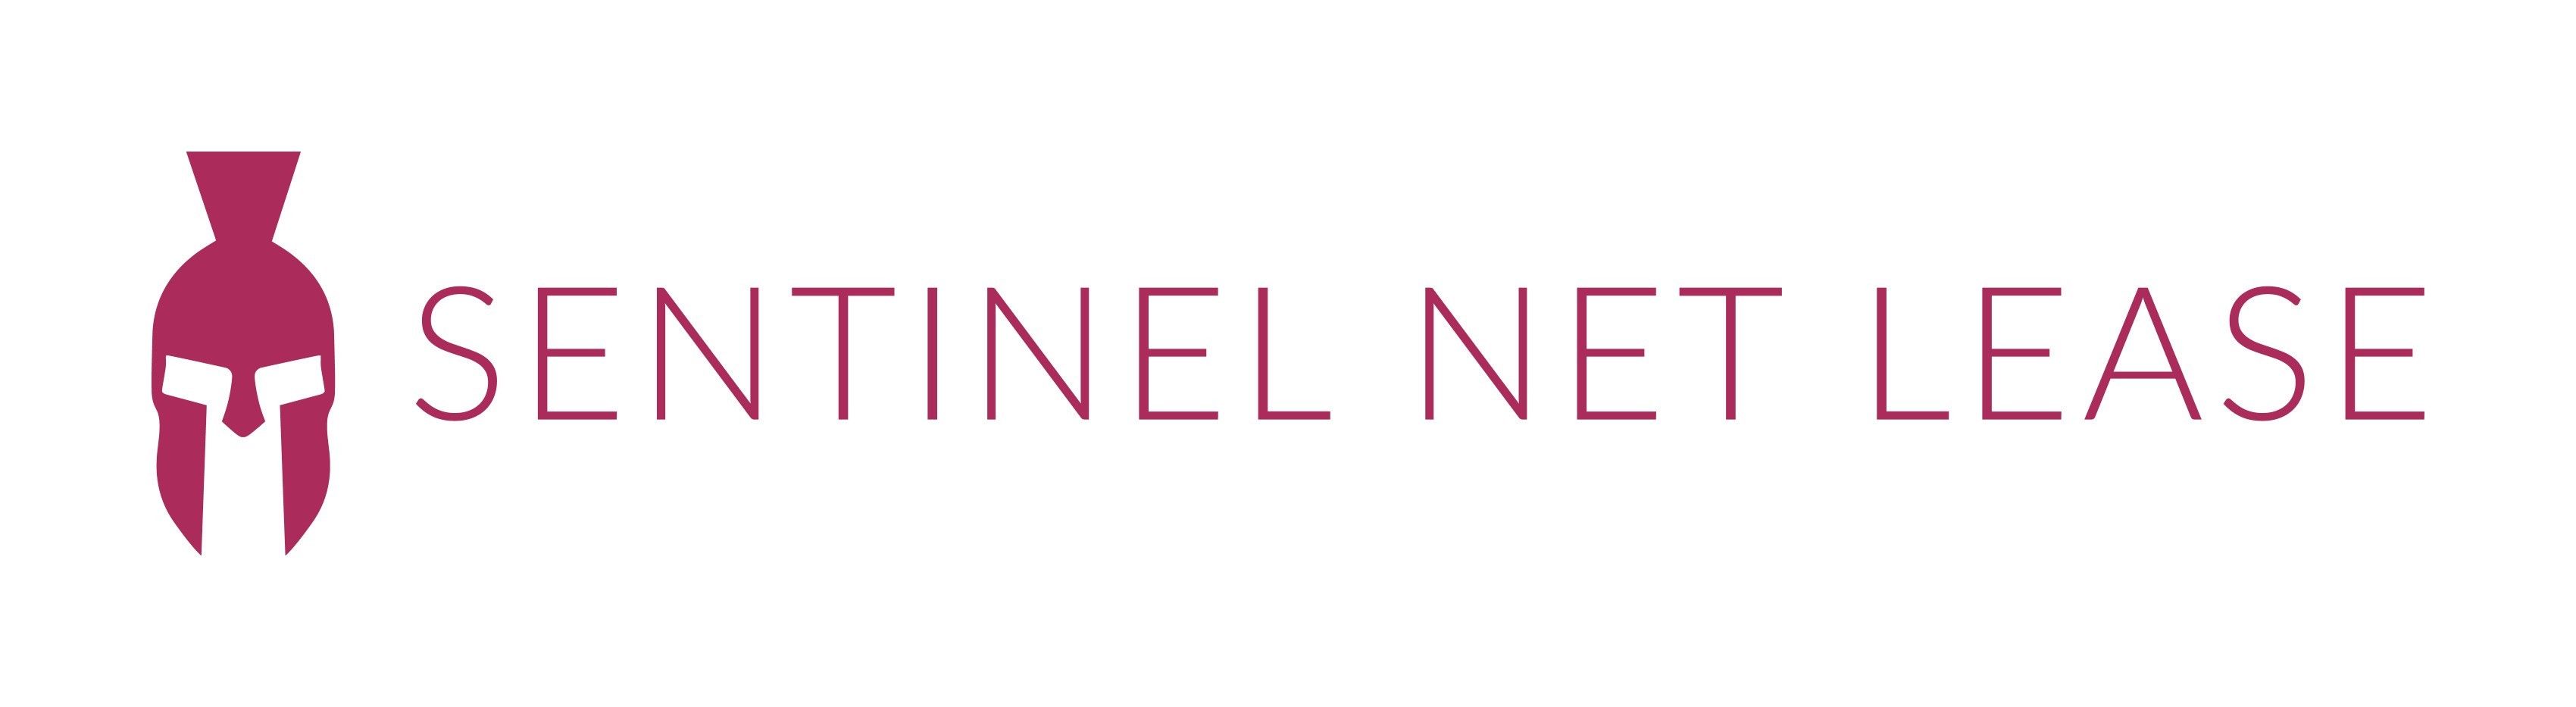 logo-sentinel net lease